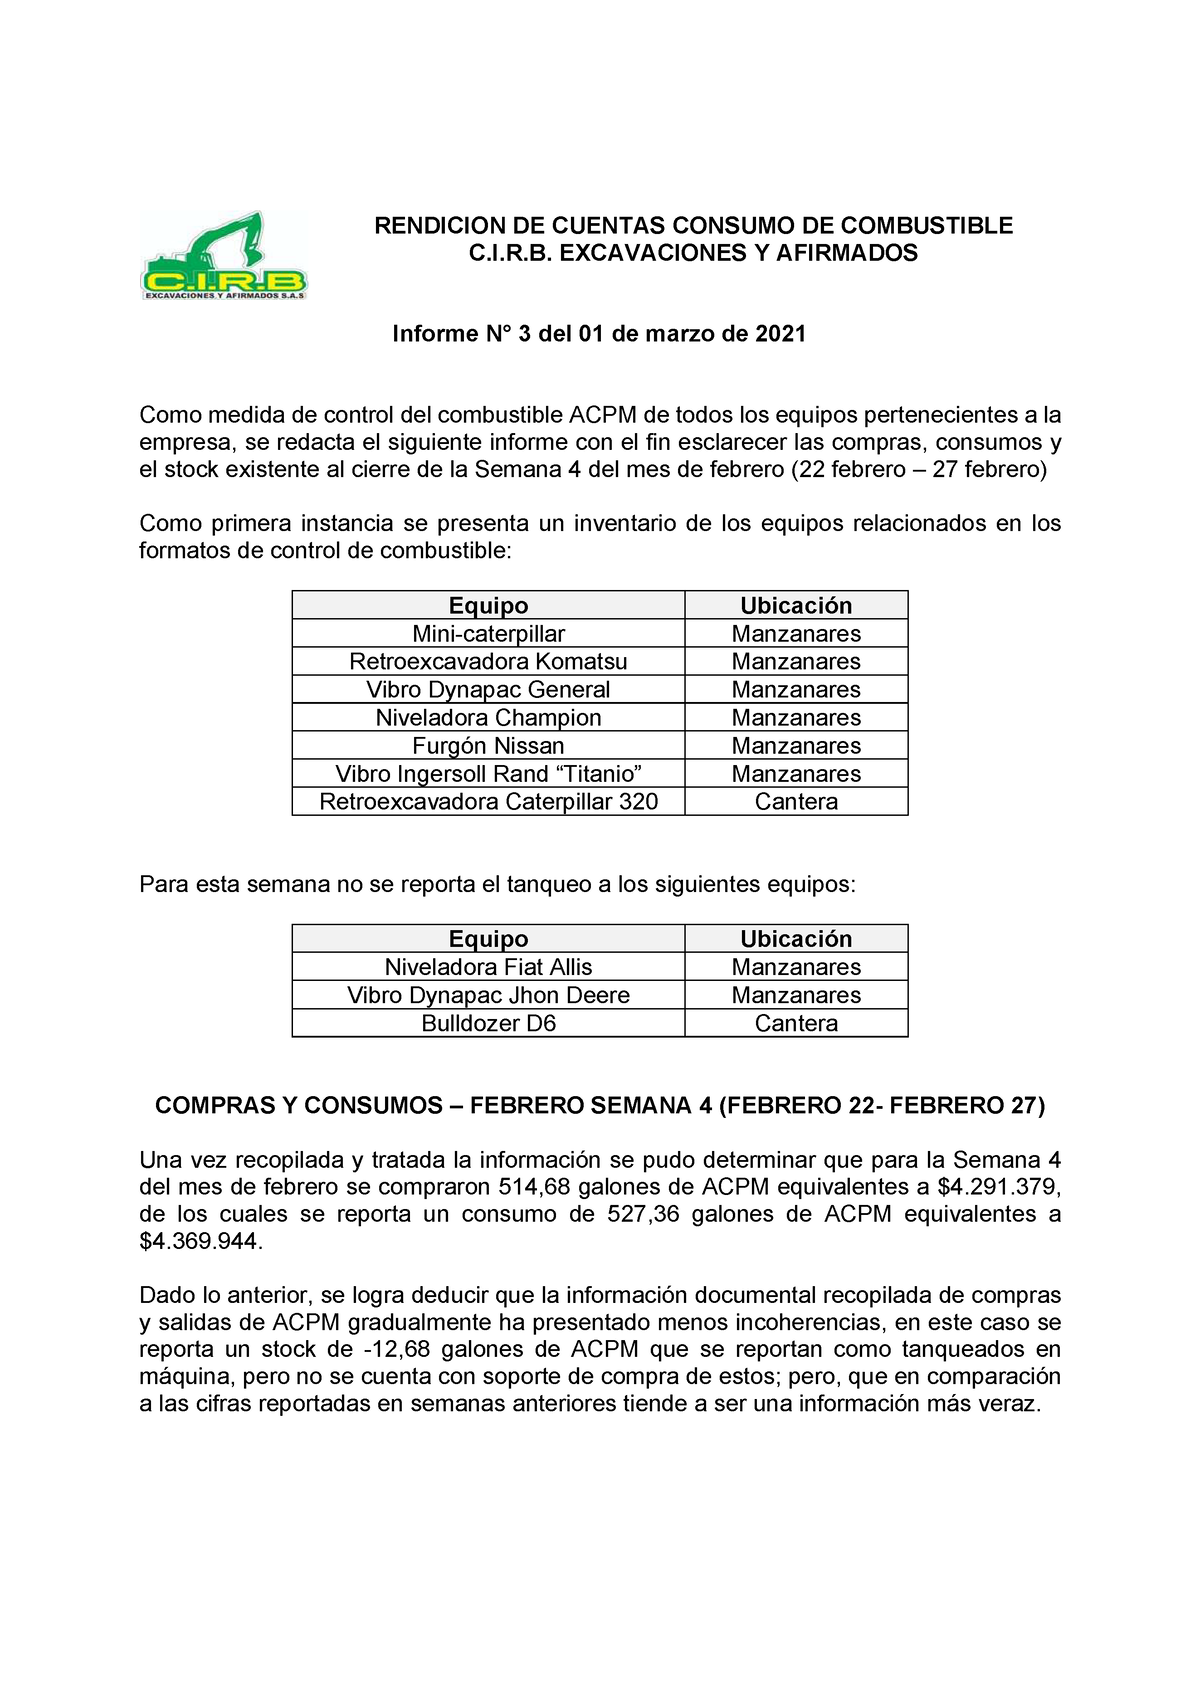 Informe N°3 - Control de combustibles Excavaciones - RENDICION DE CUENTAS  CONSUMO DE COMBUSTIBLE - Studocu